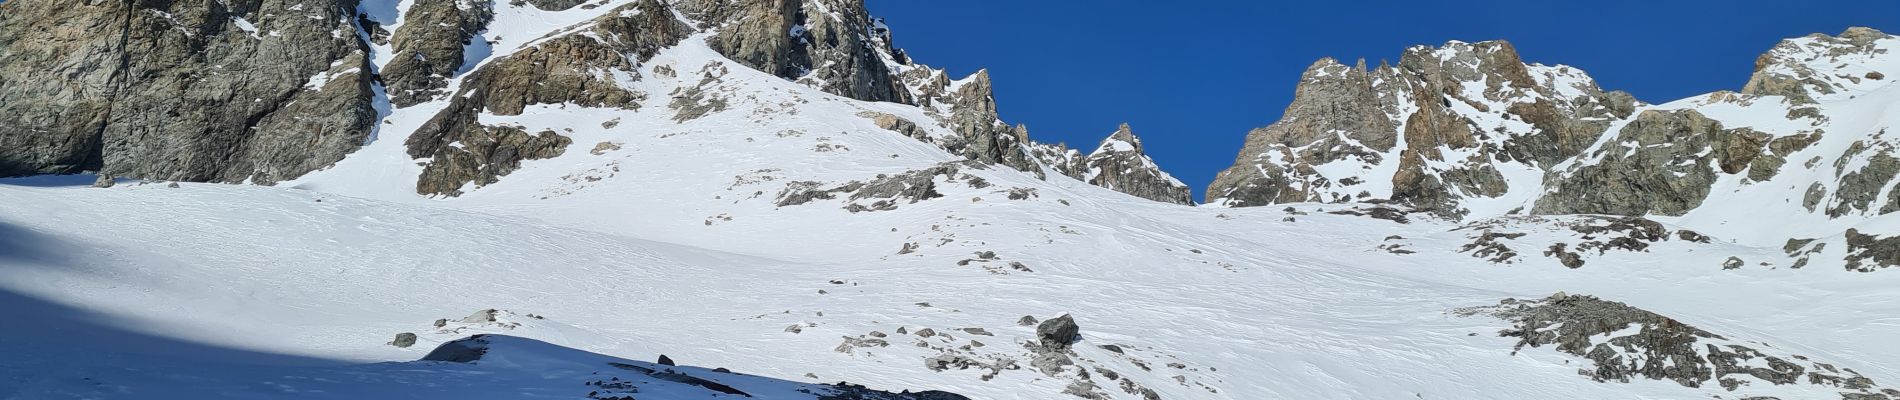 Randonnée Ski de randonnée Le Monêtier-les-Bains - glacier du dome de monetier  - Photo